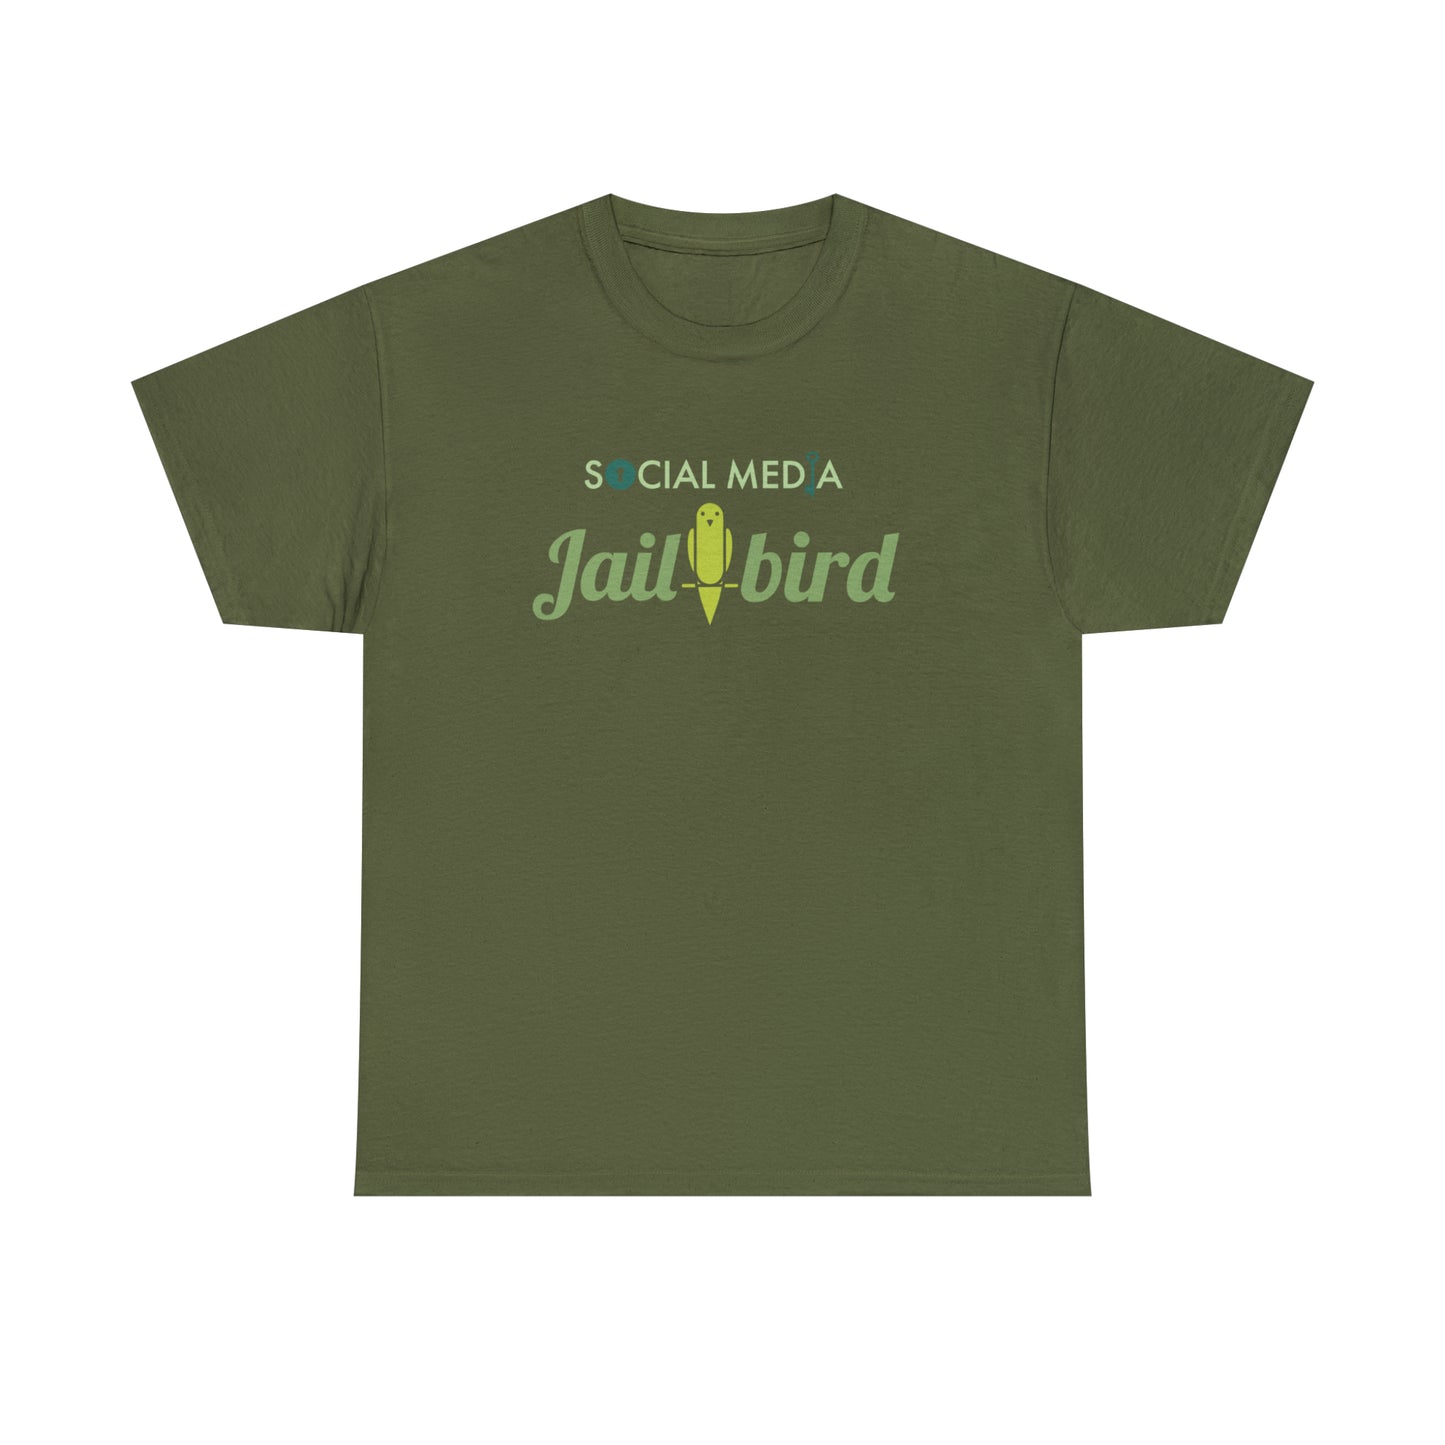 Censorship T-Shirt for Social Media Jailbird TShirt For Conservative T Shirt Censorship Shirt For First Amendment Gift For Free Thinker